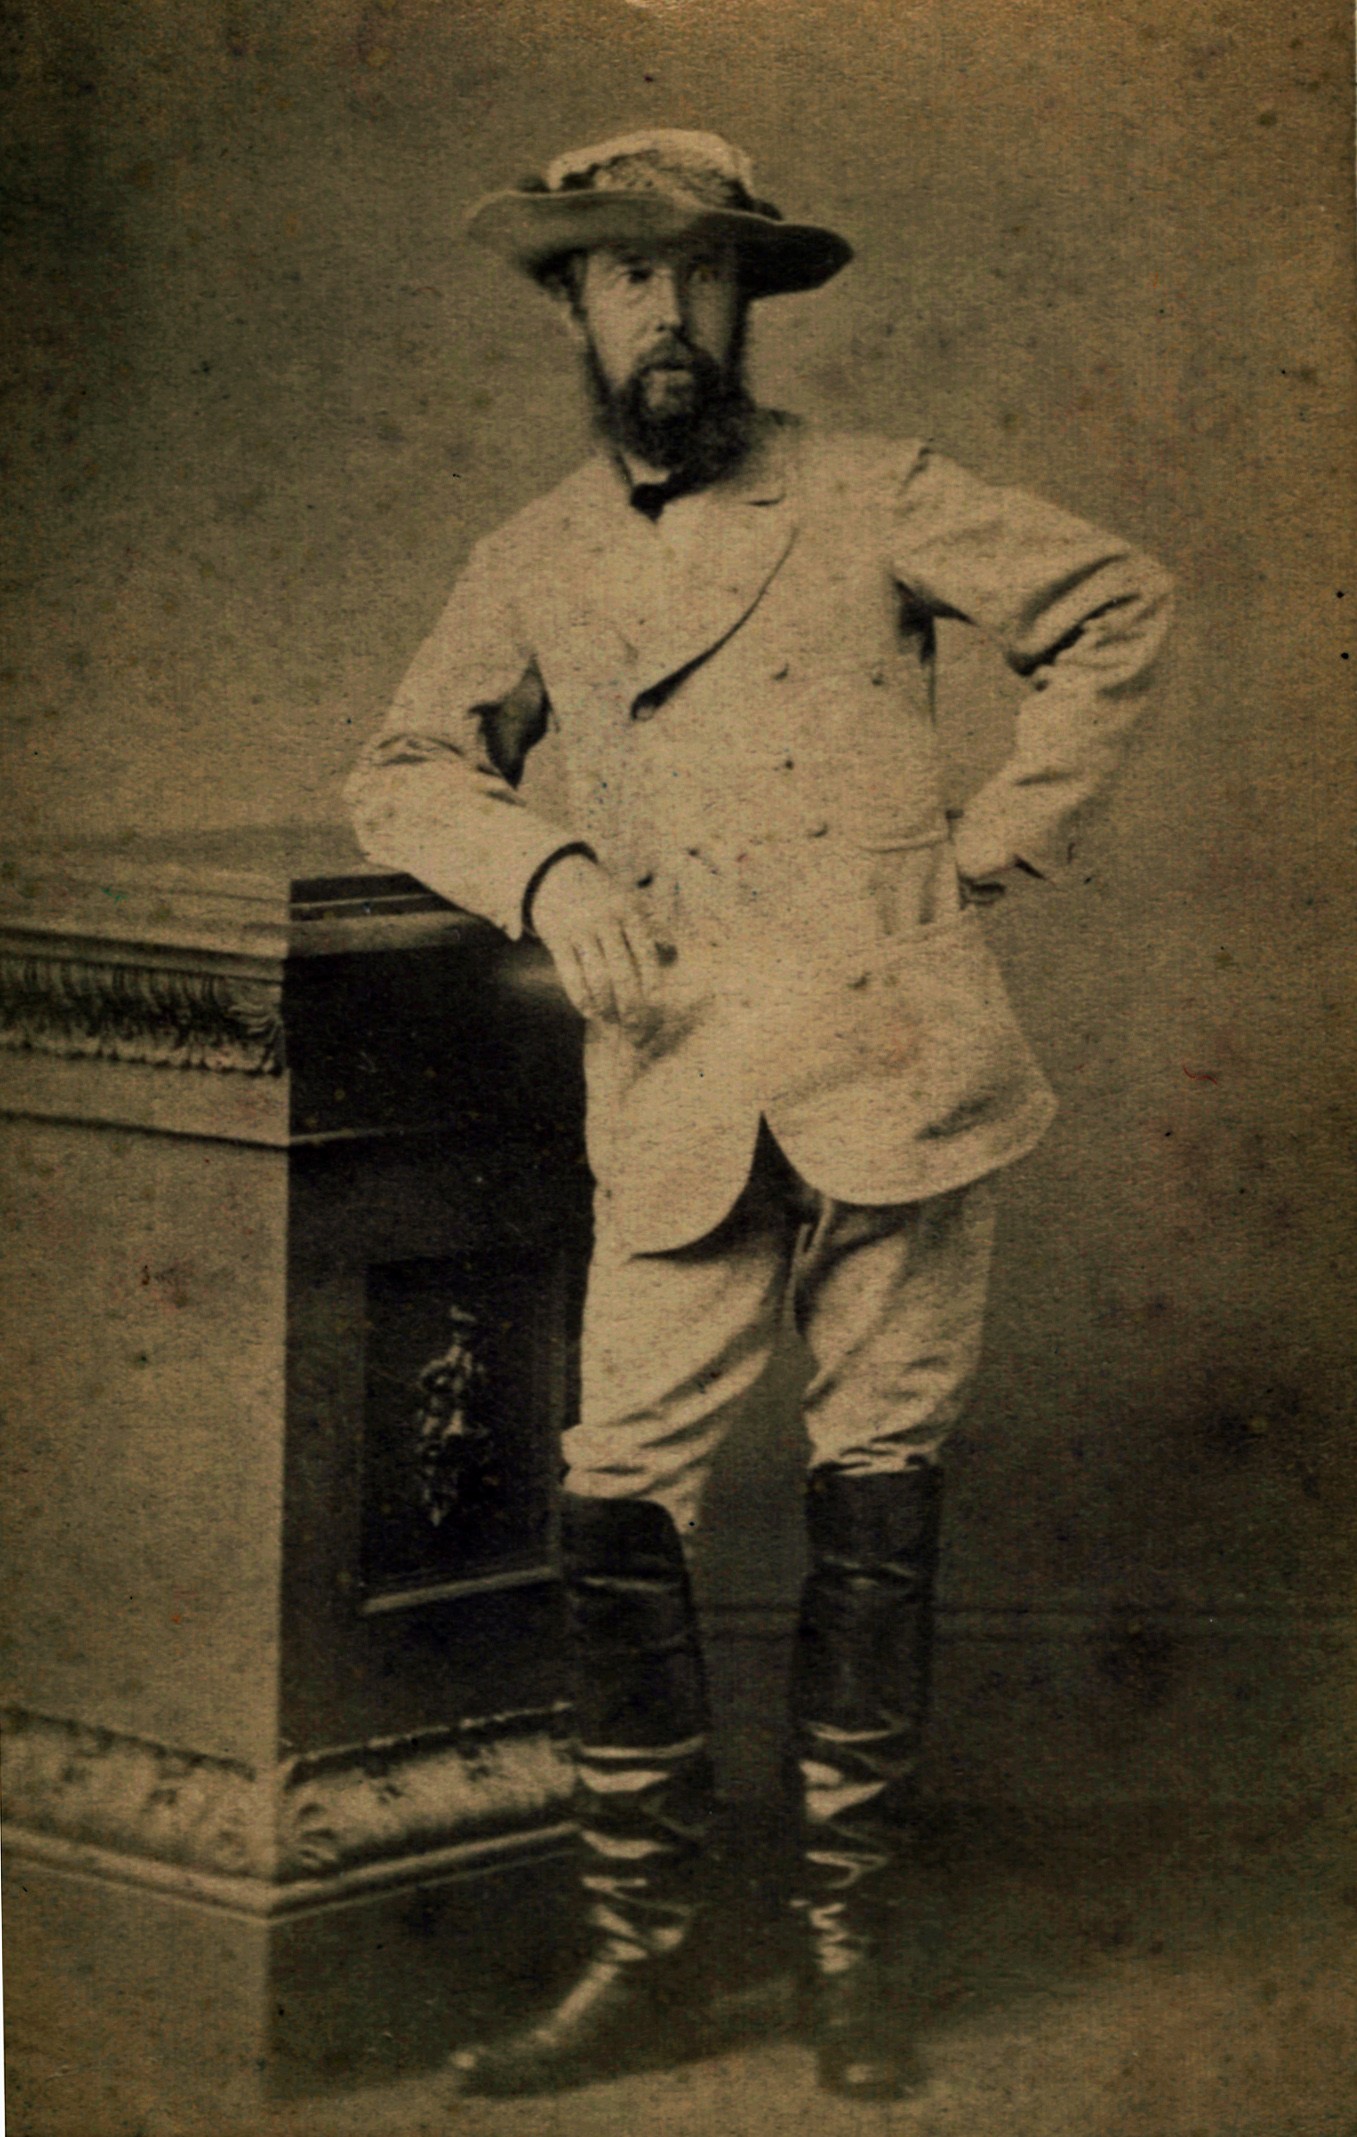 Figure 5. Charles Todd standing in studio, c. 1871